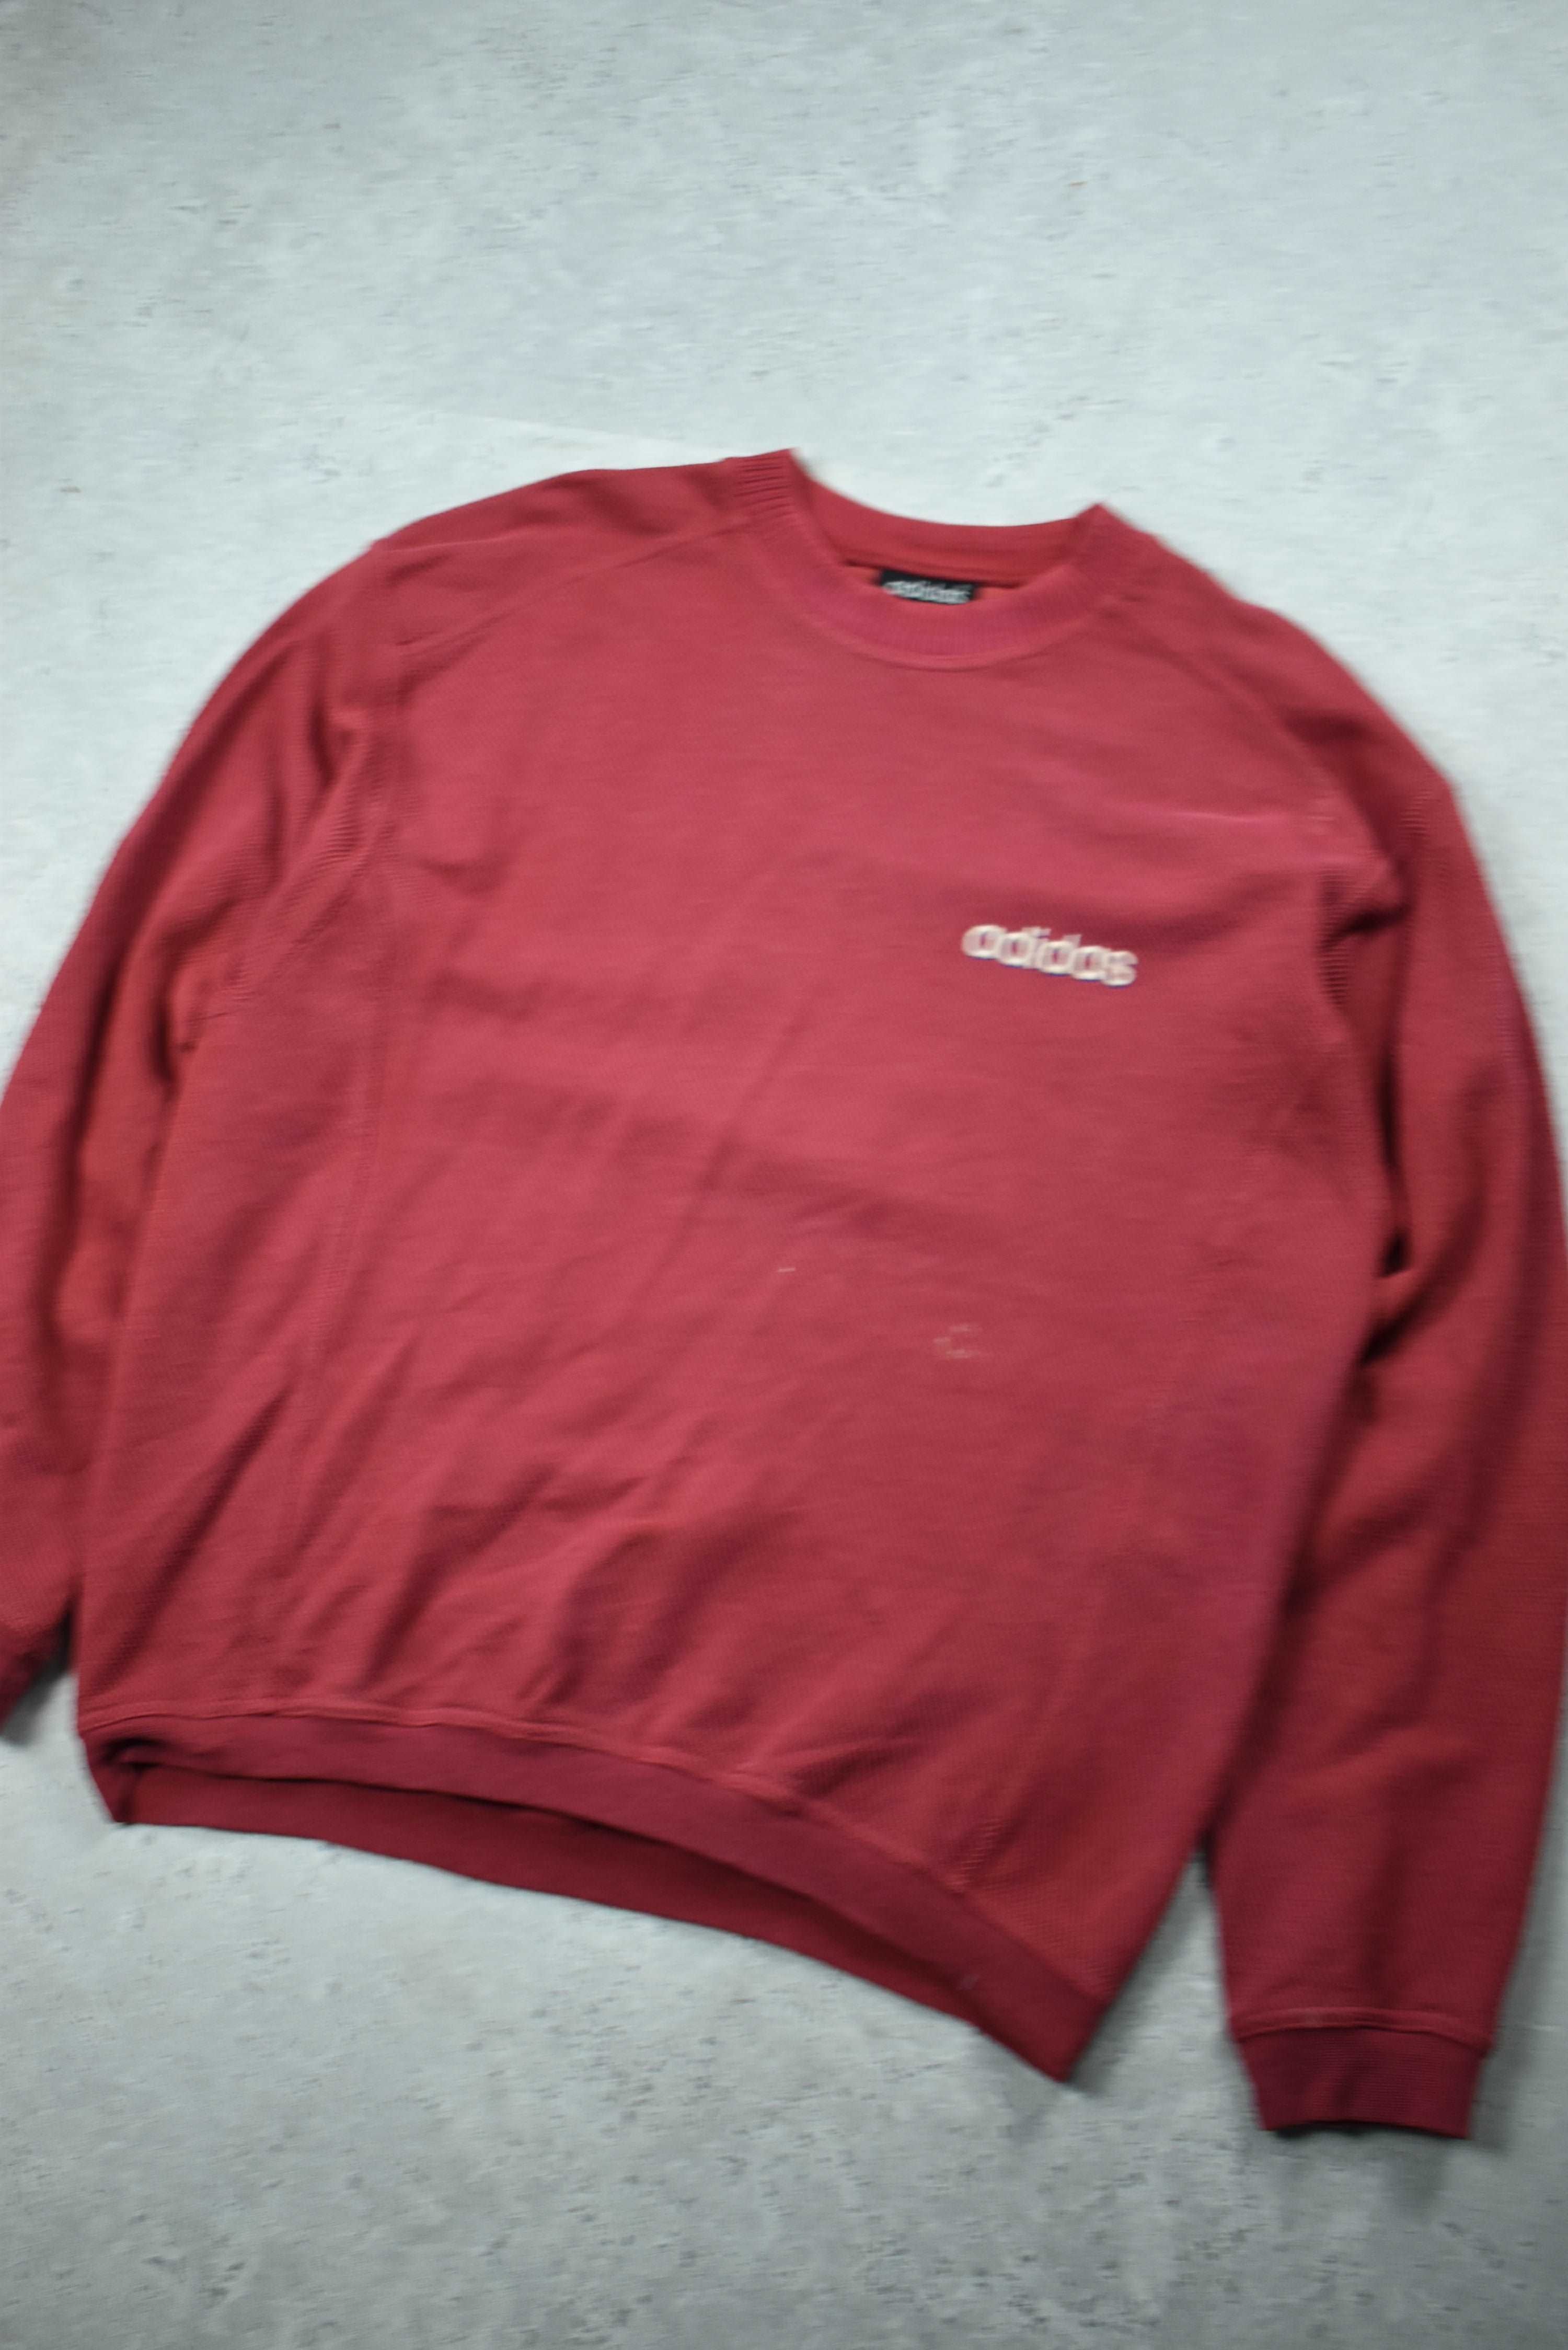 Vintage Adidas Embroidered Cord Sweatshirt Medium